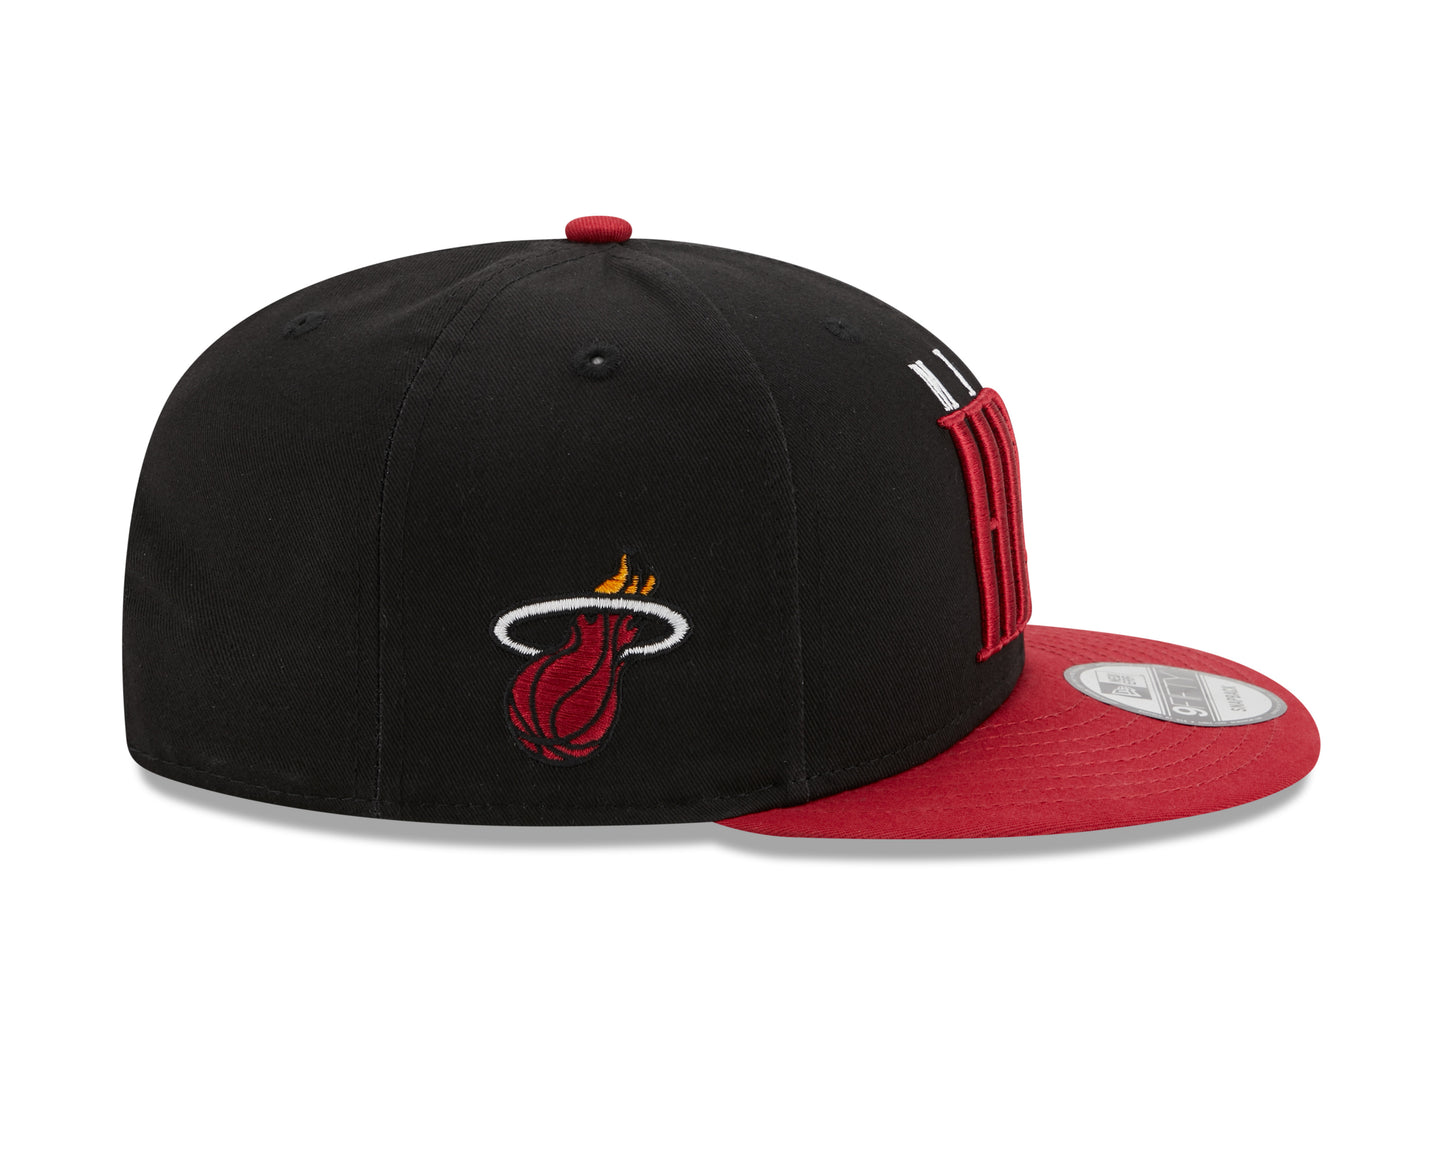 Miami Heat NBA New Era Team Title 9Fifty Snapback Hat - Black / Red